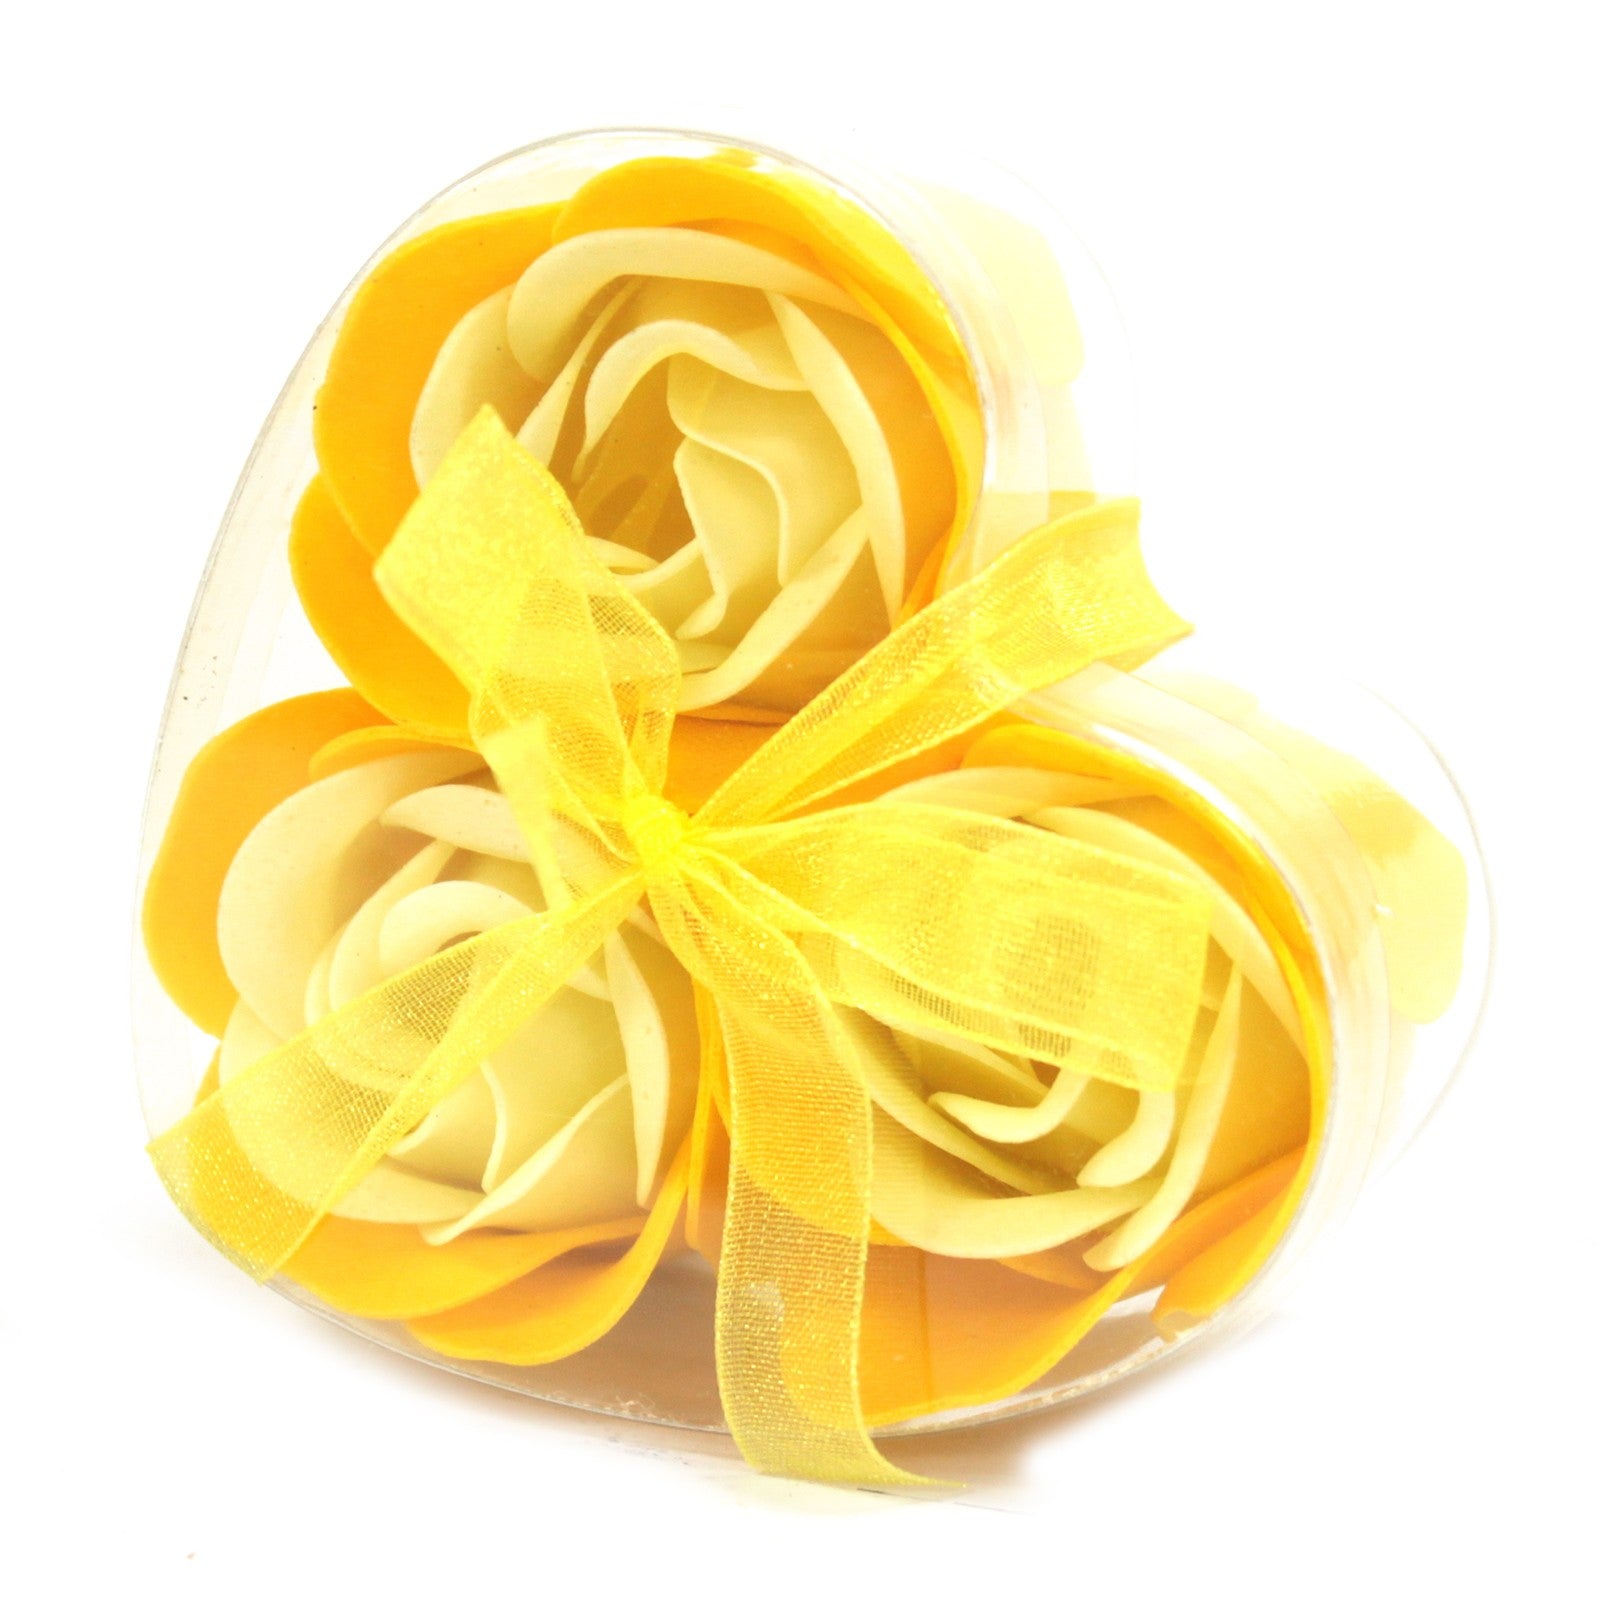 Soap Flower Heart Box - 3 Spring Roses